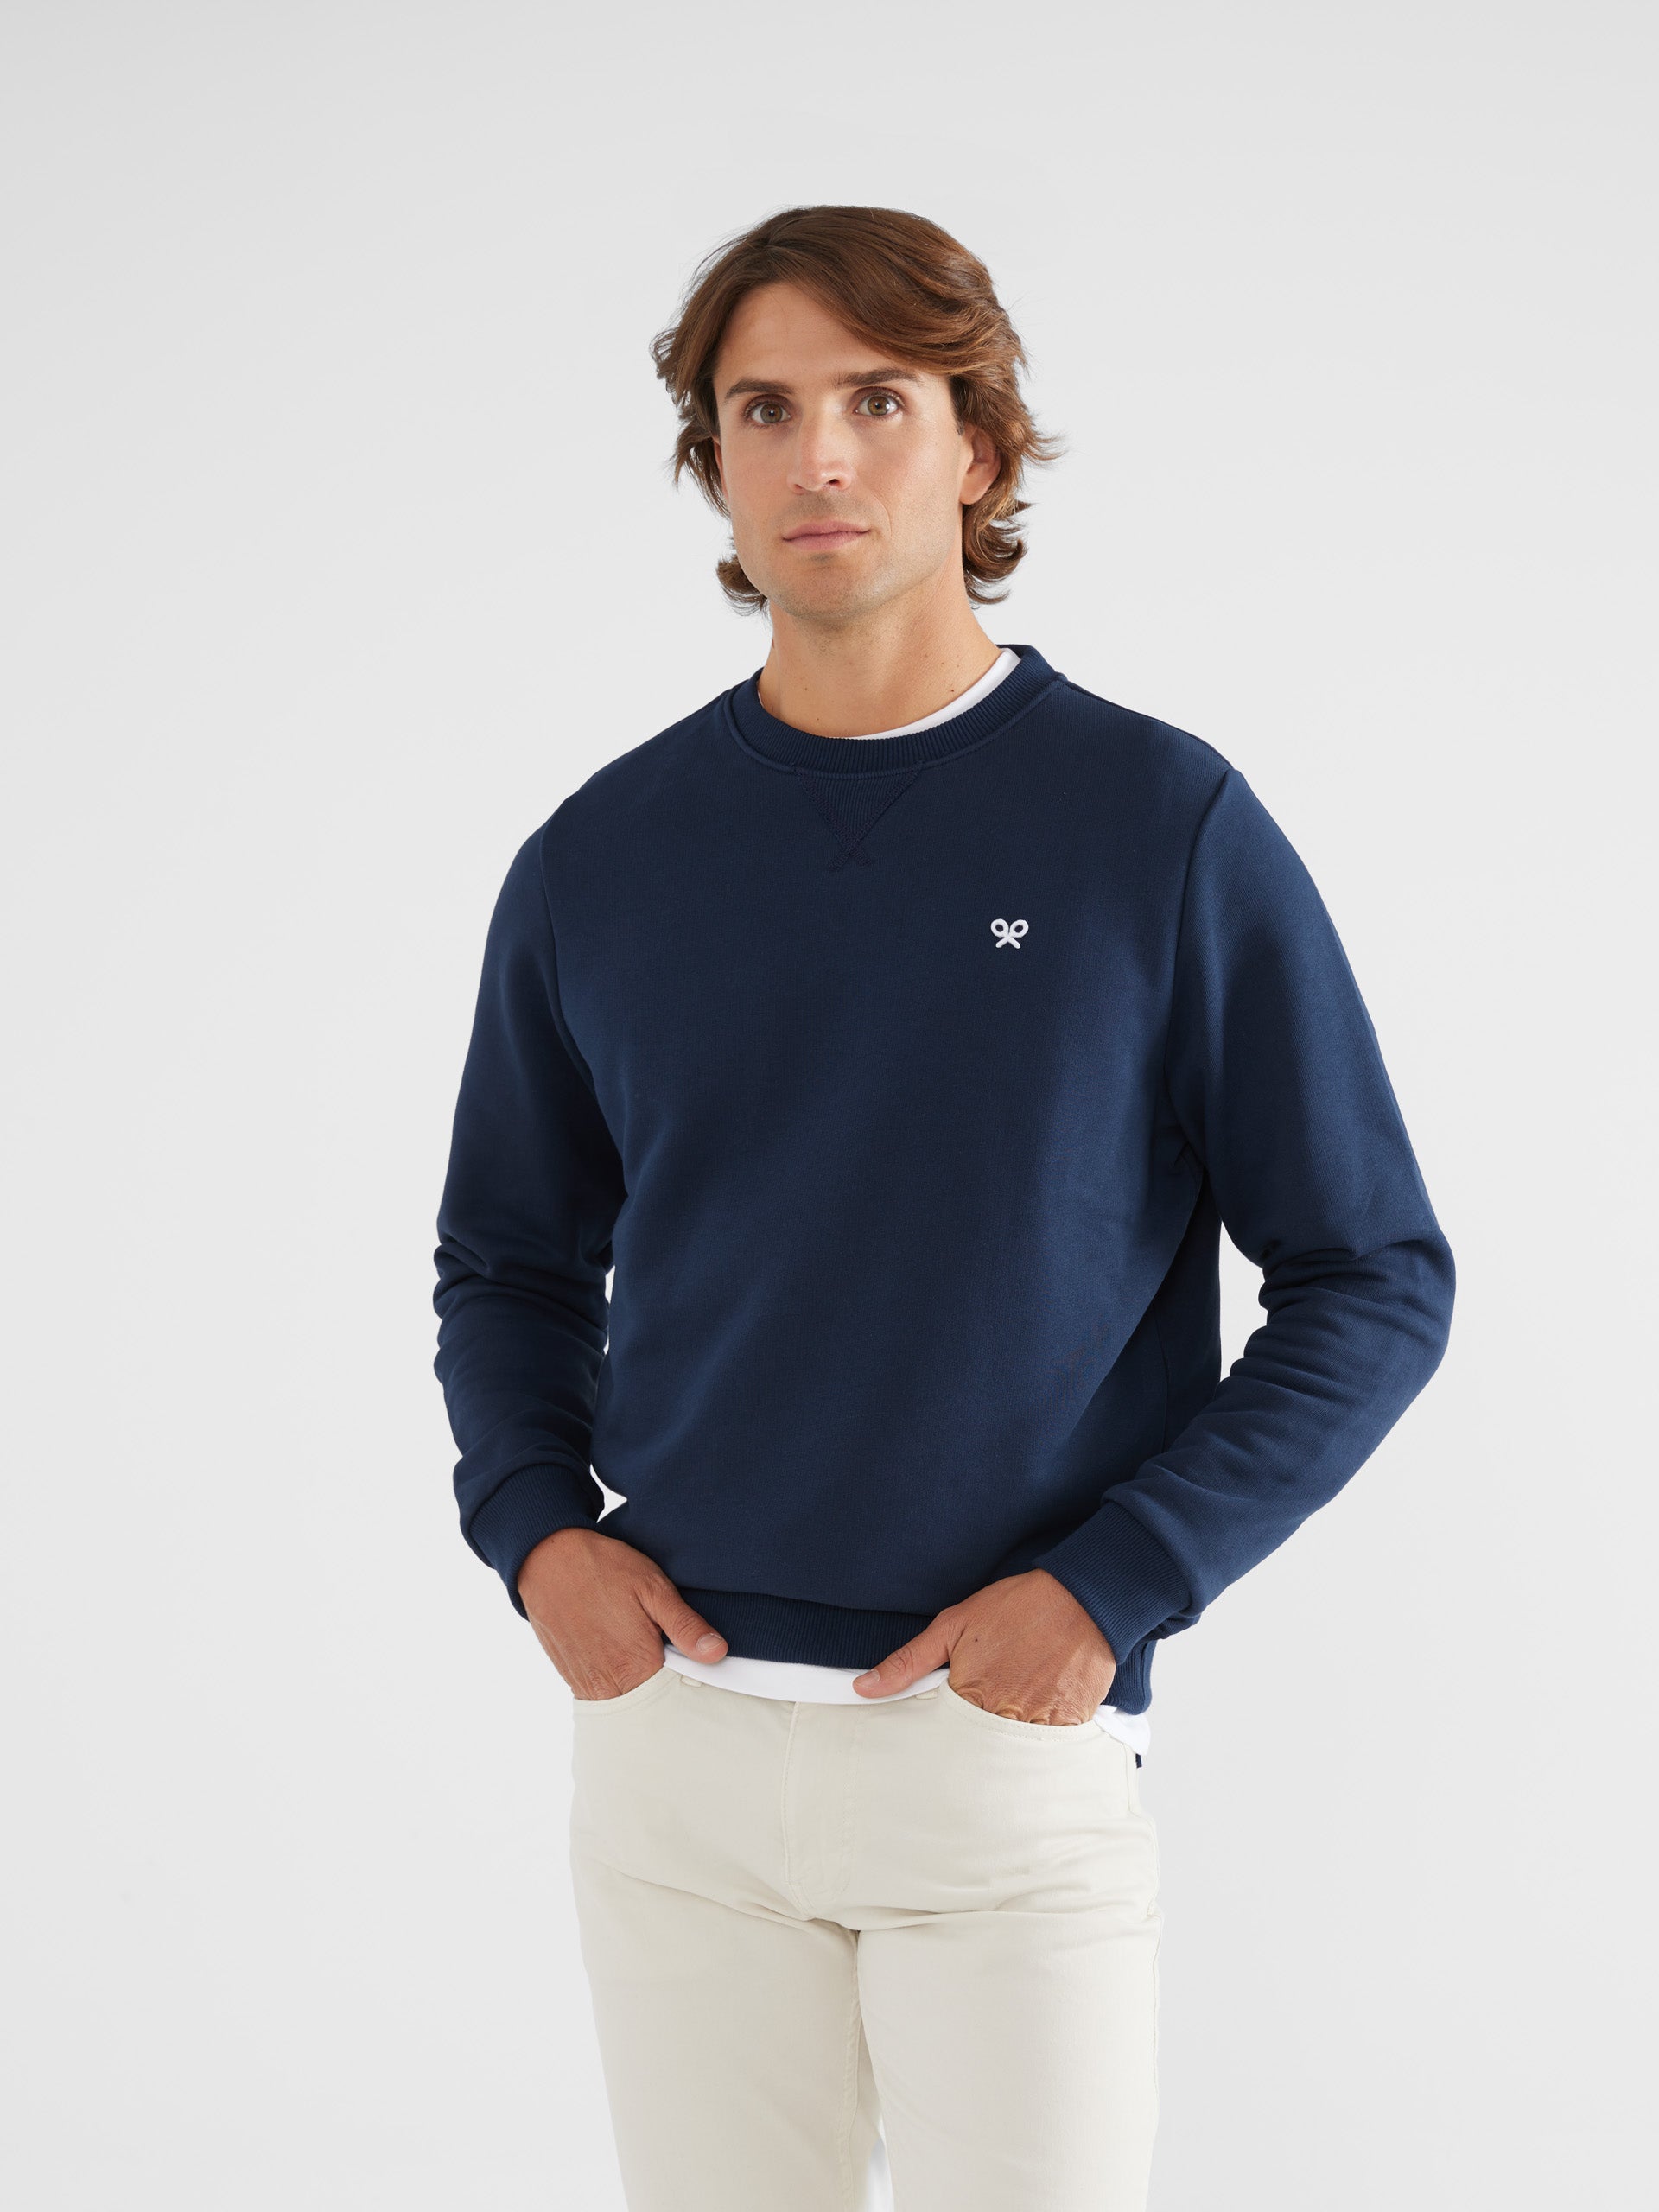 High Peaks navy blue sweatshirt